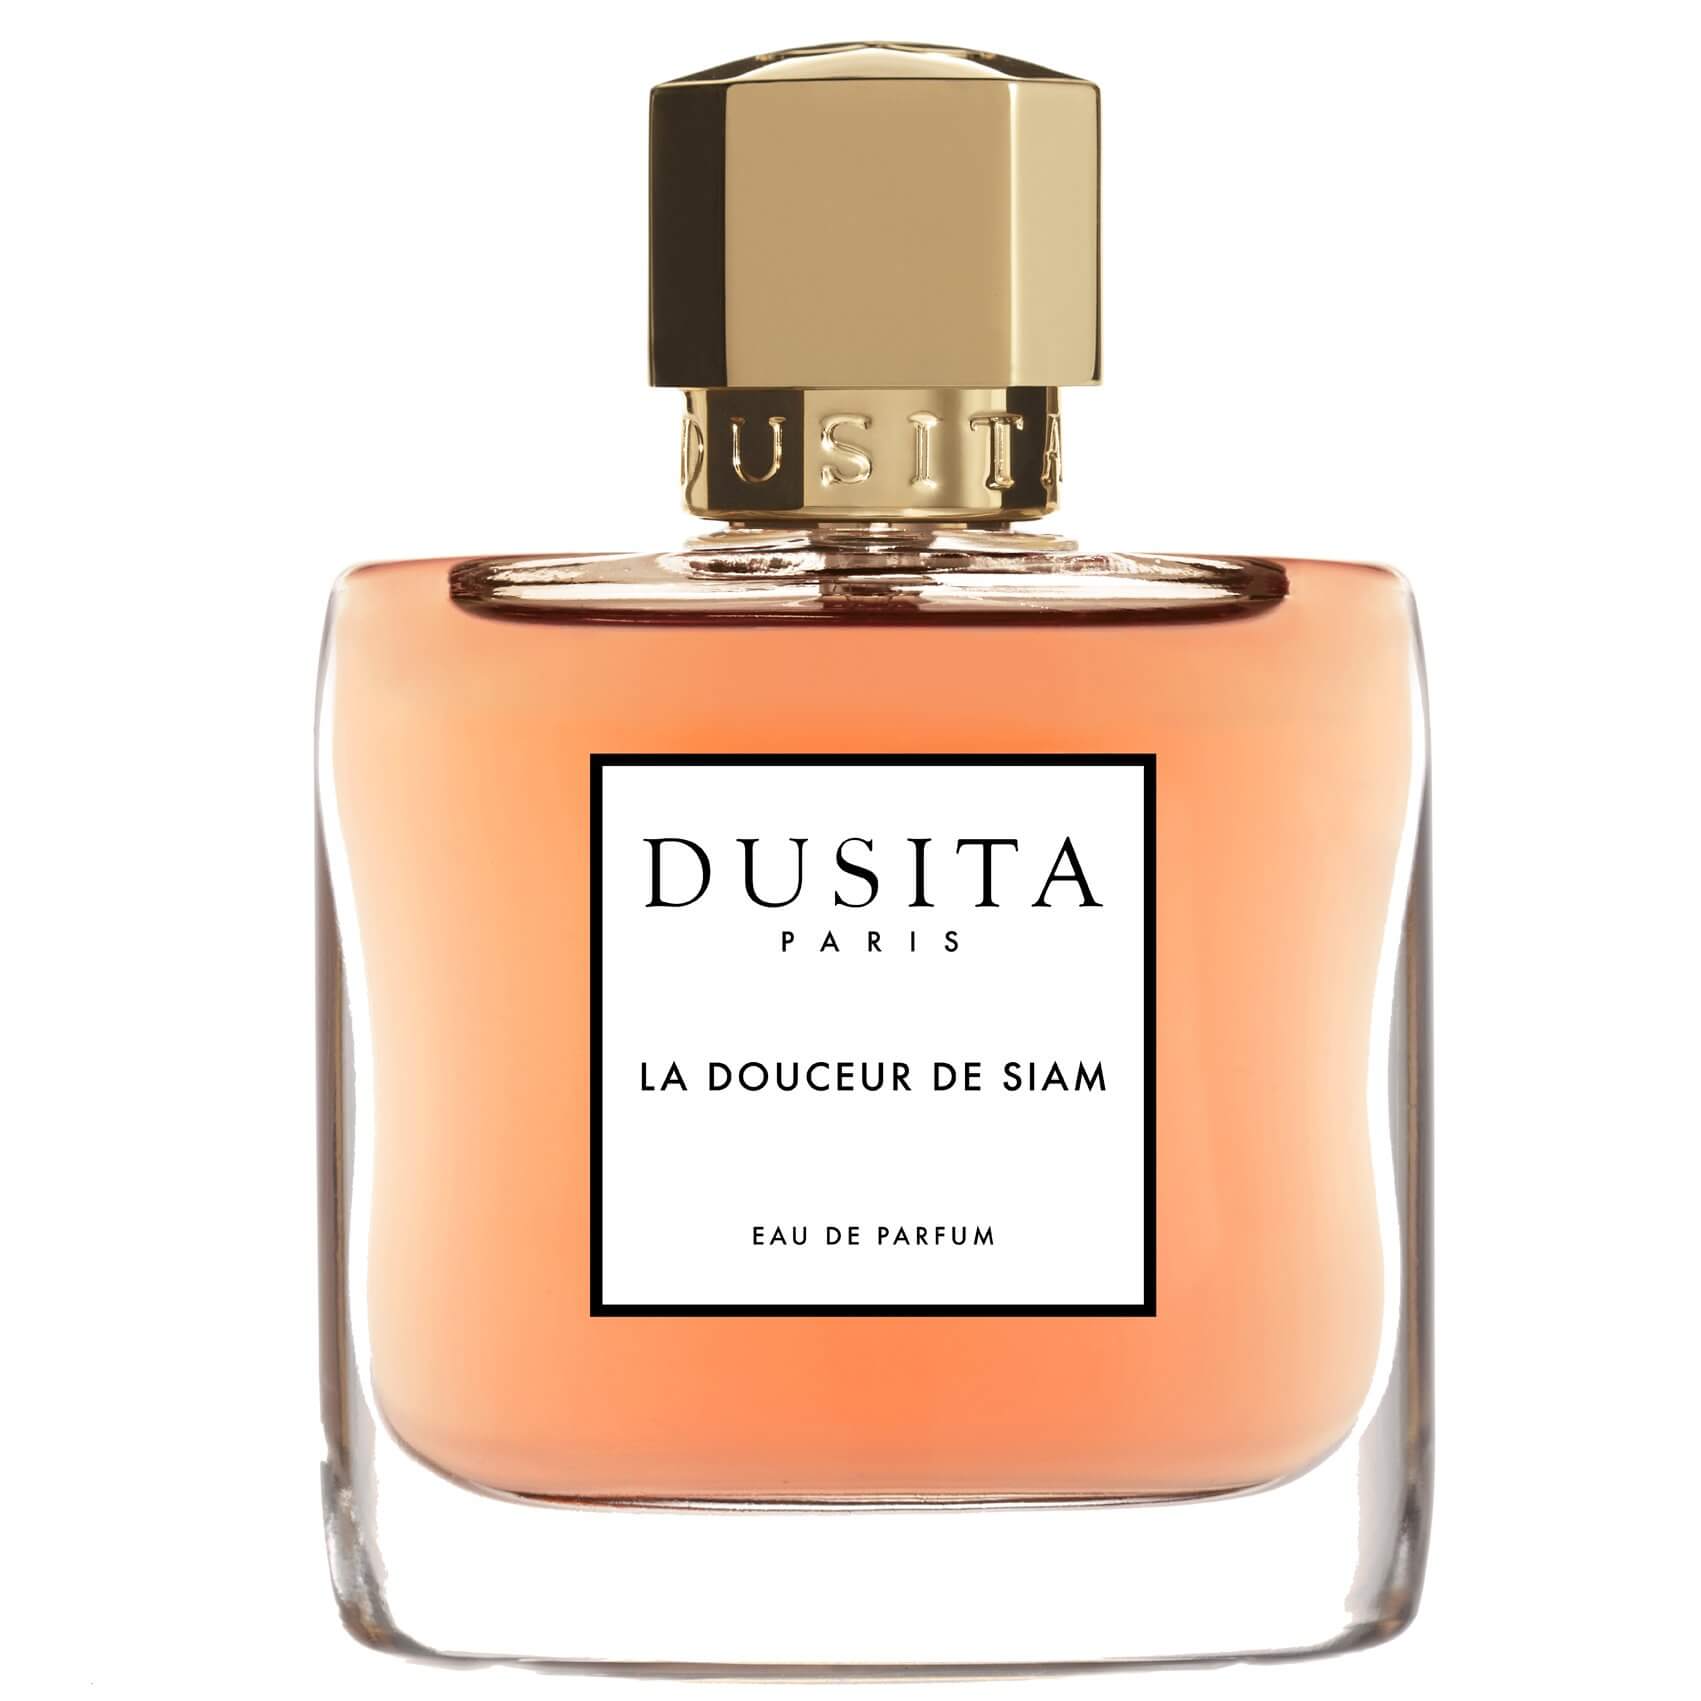 La Douceur de Siam by Dusita at Indigo Perfumery